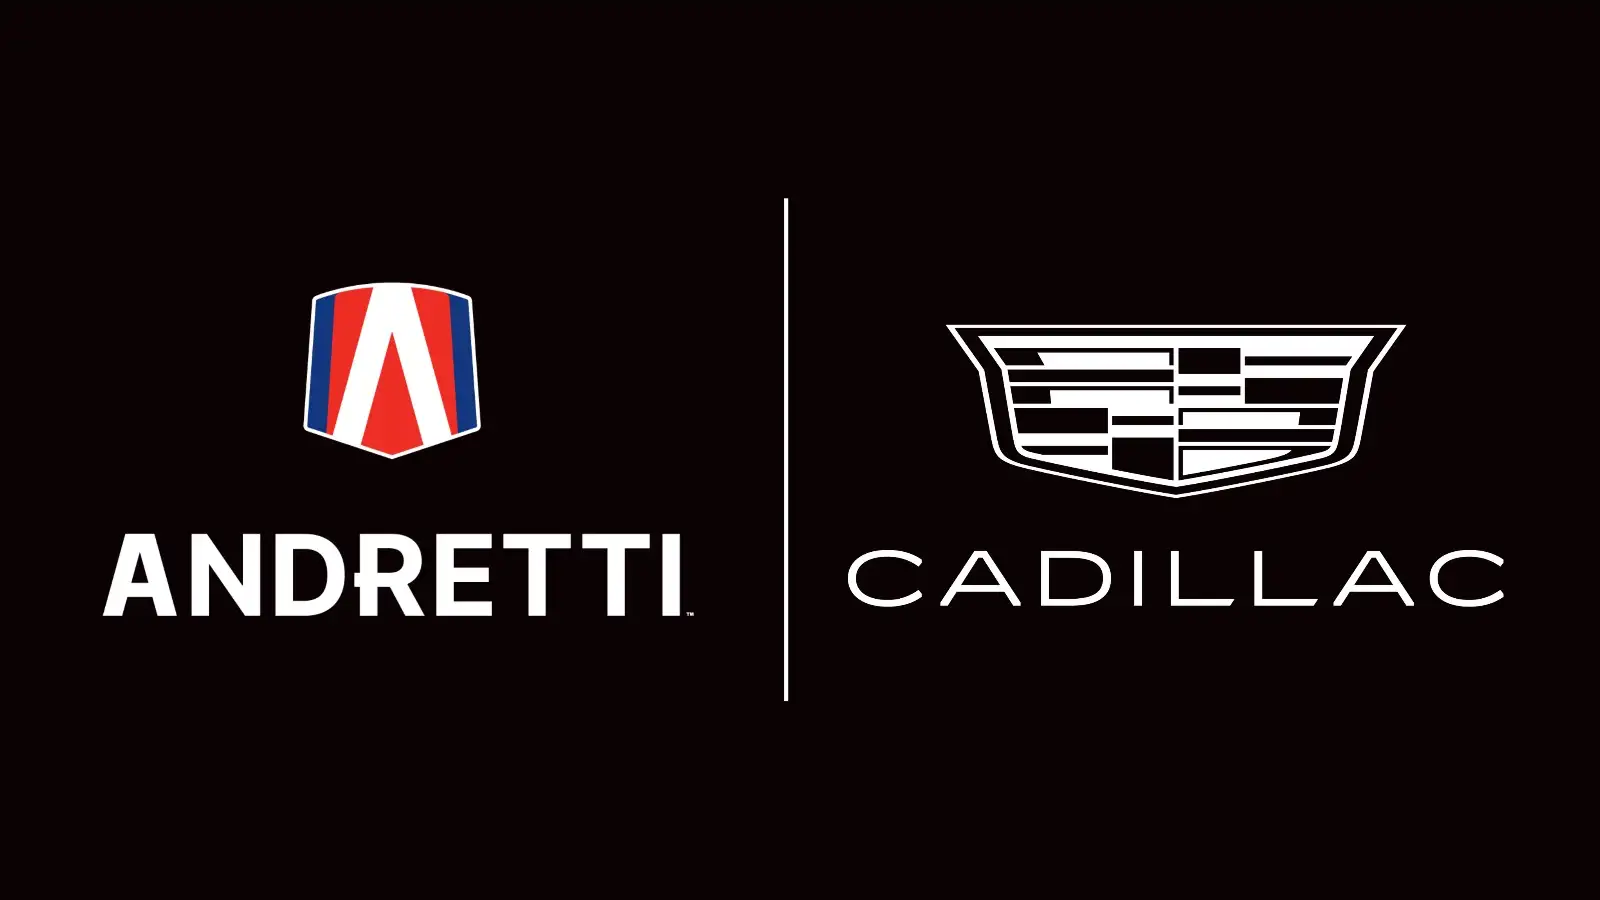 Andretti Global and Cadillac logo lockup